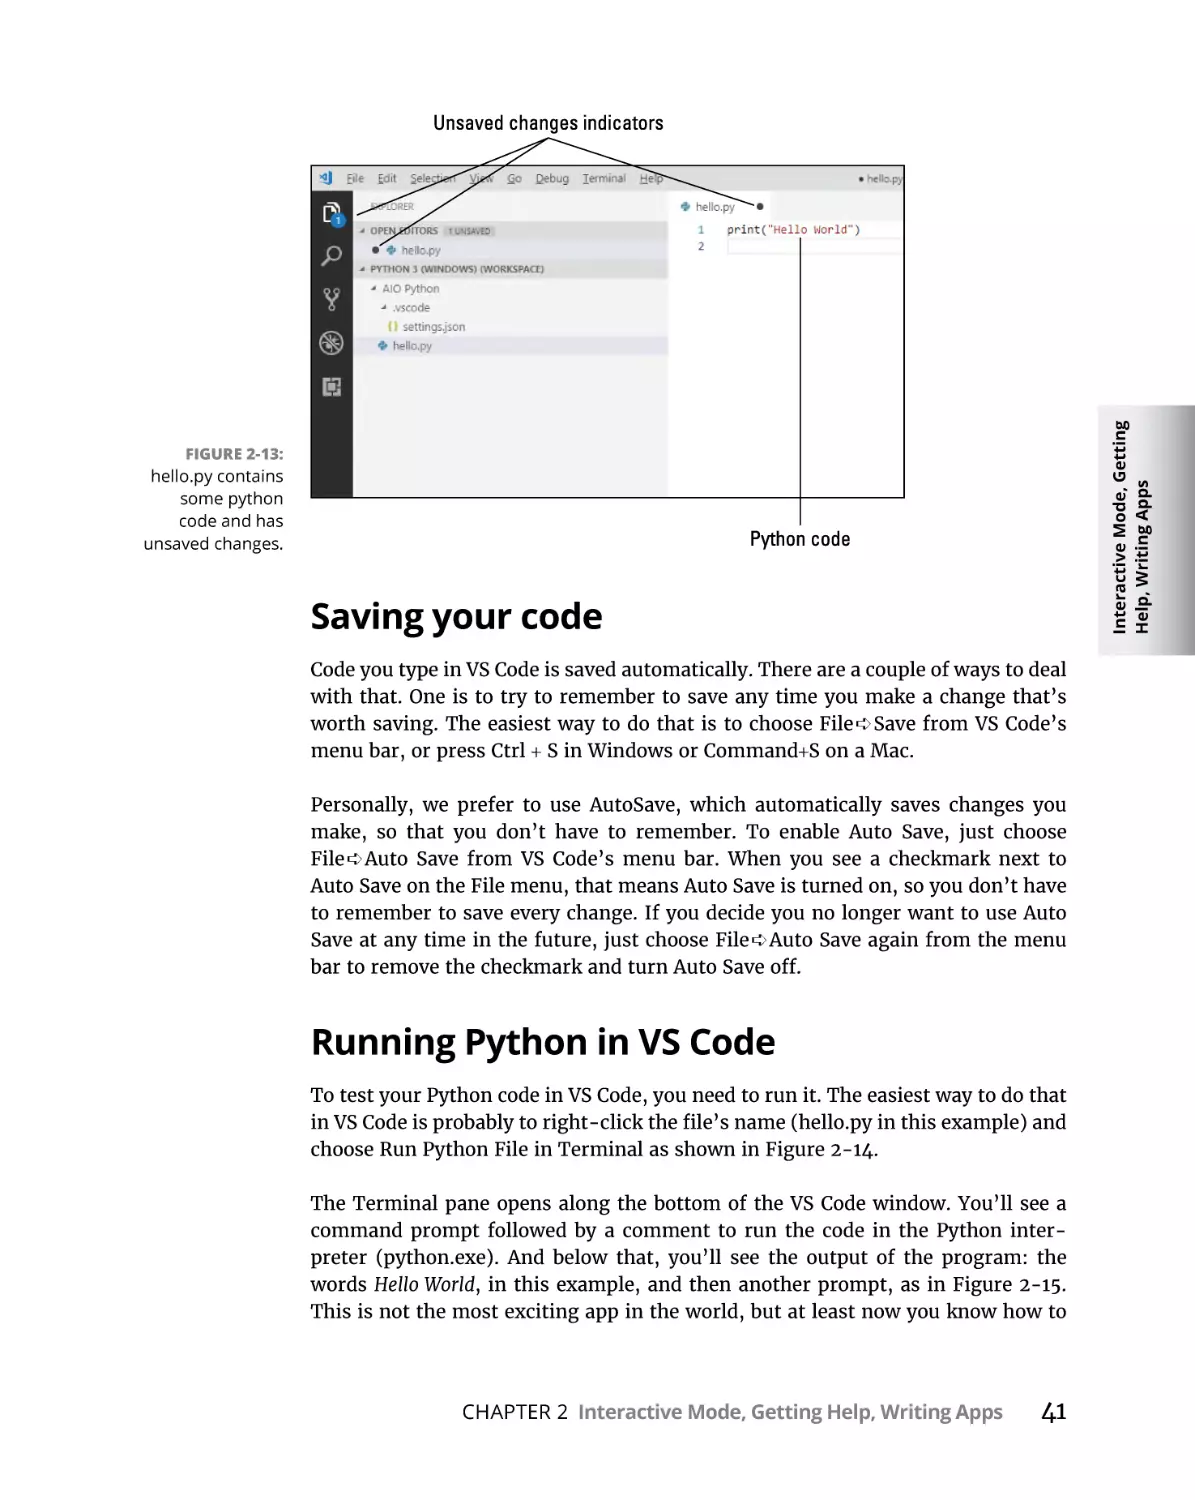 Saving your code
Running Python in VS Code